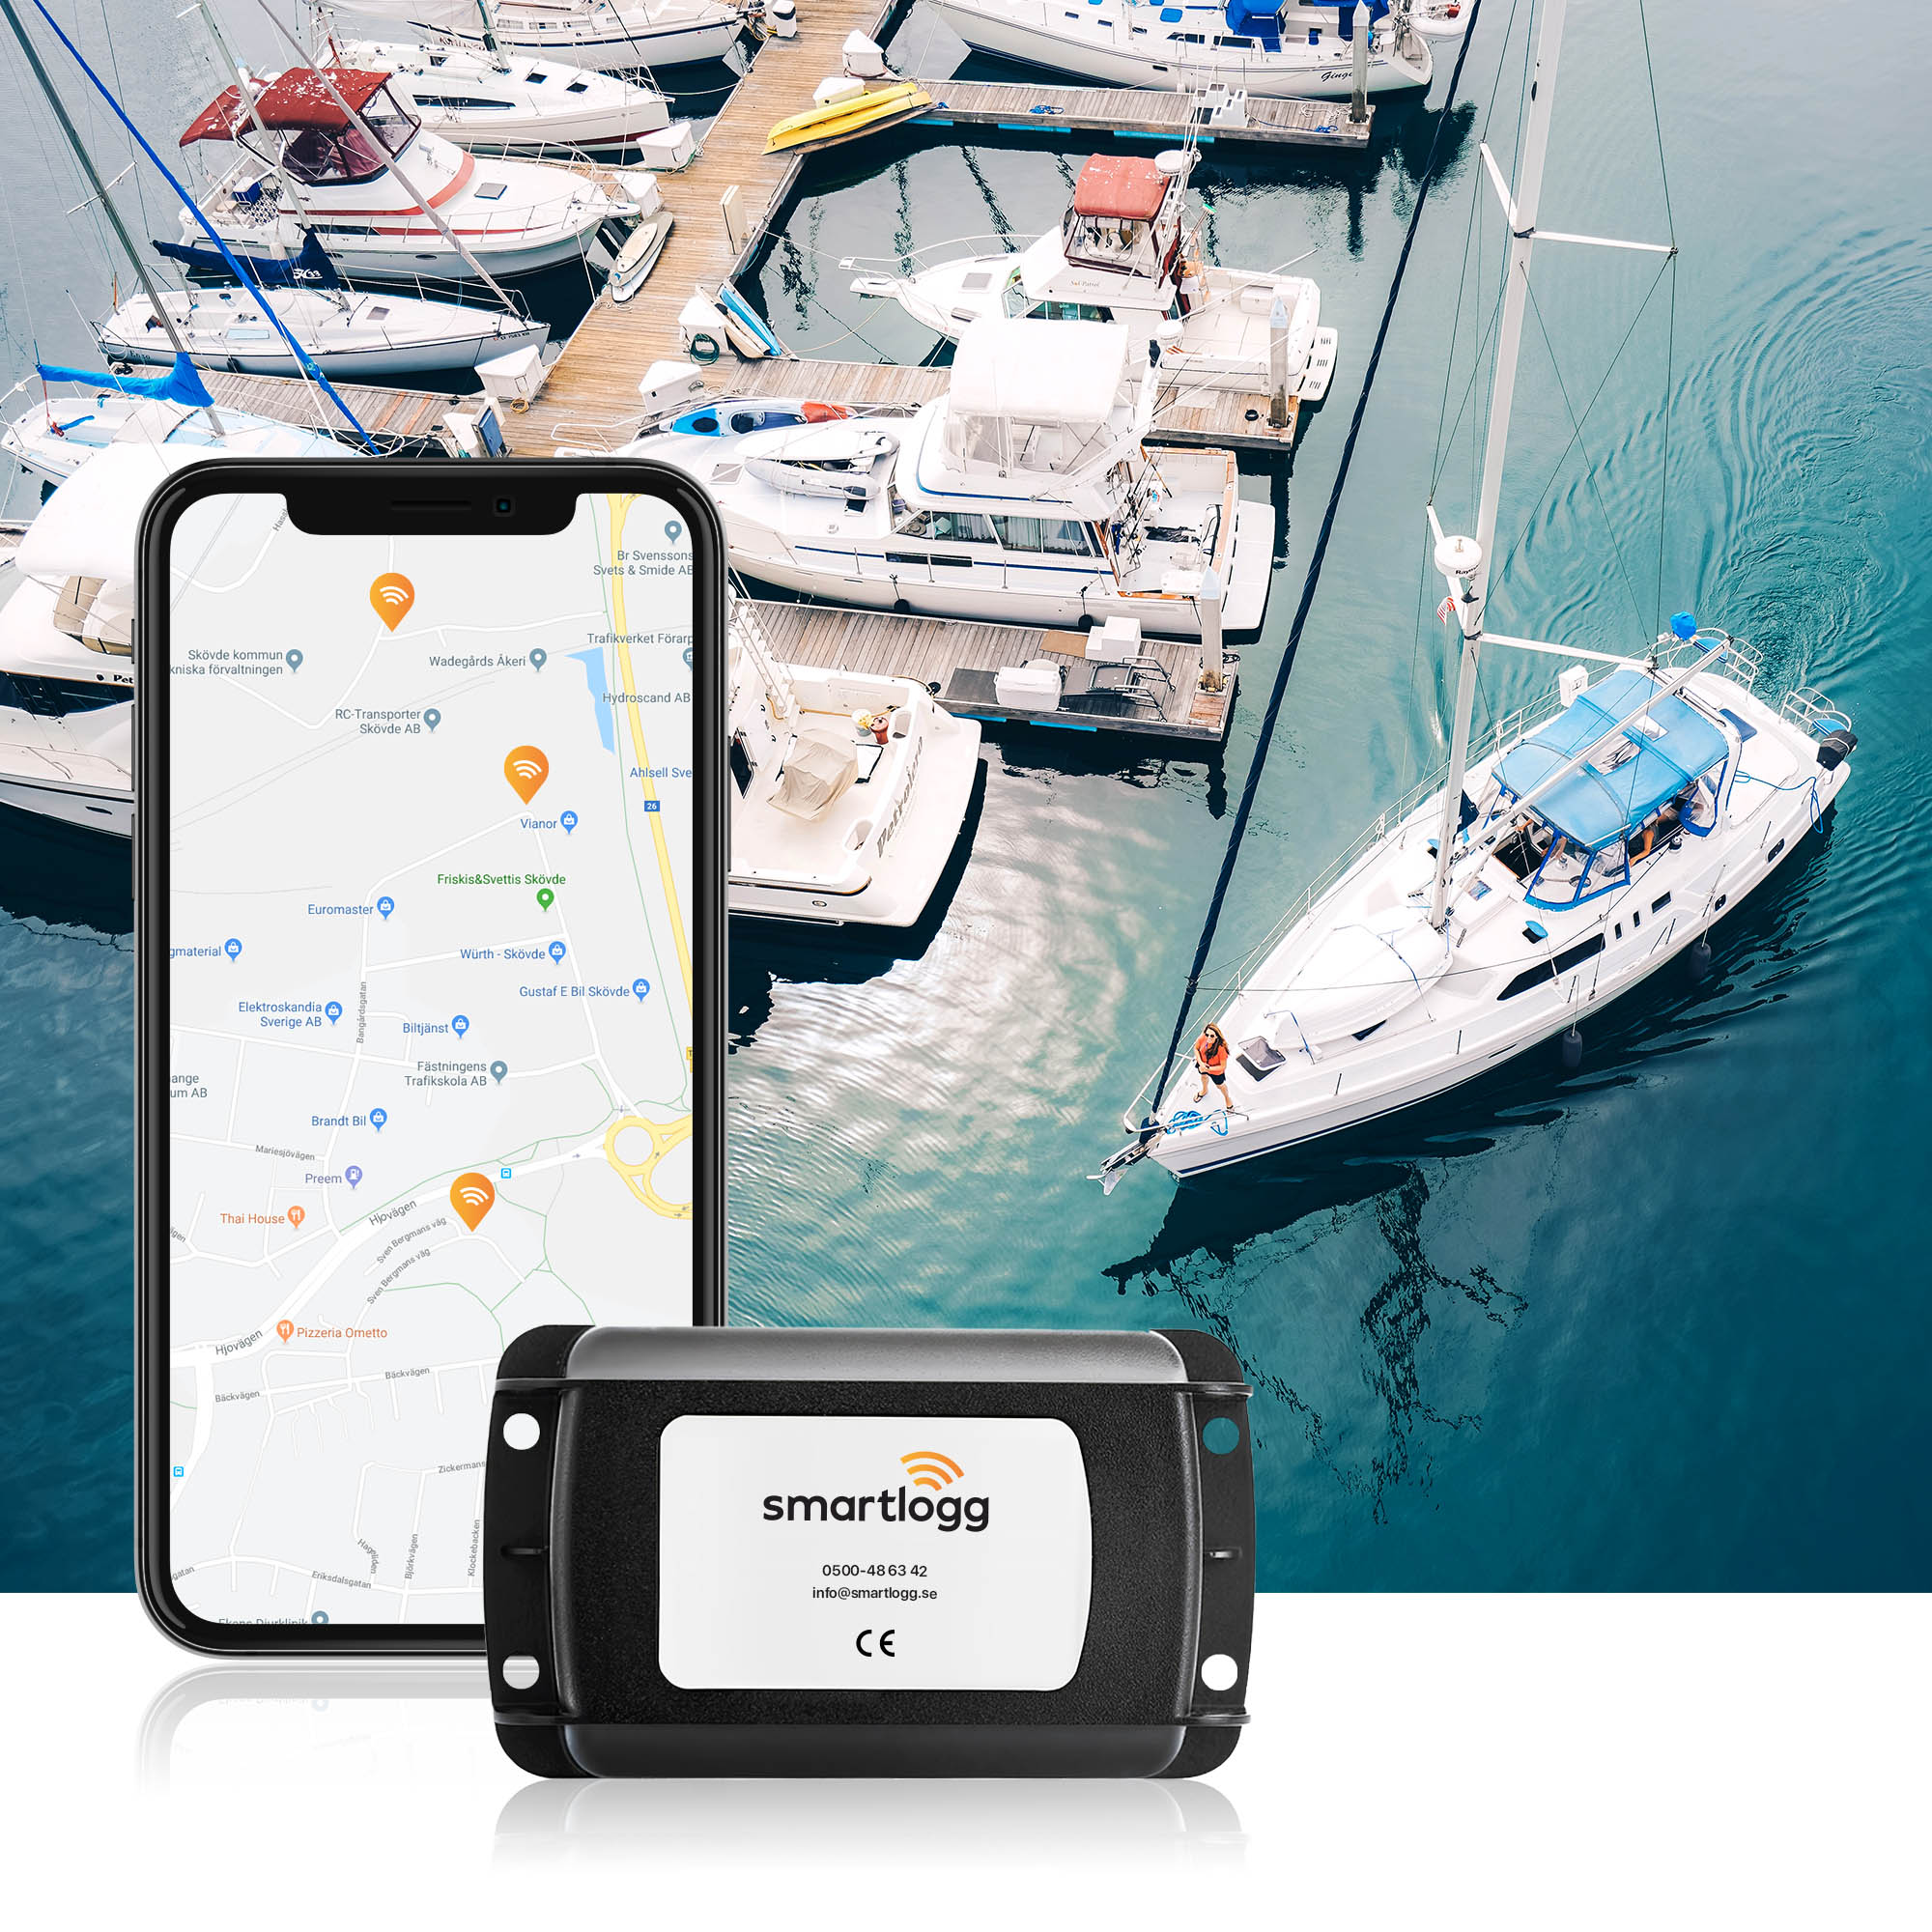 gps-tracker från smartlogg framför en mobil och en båt